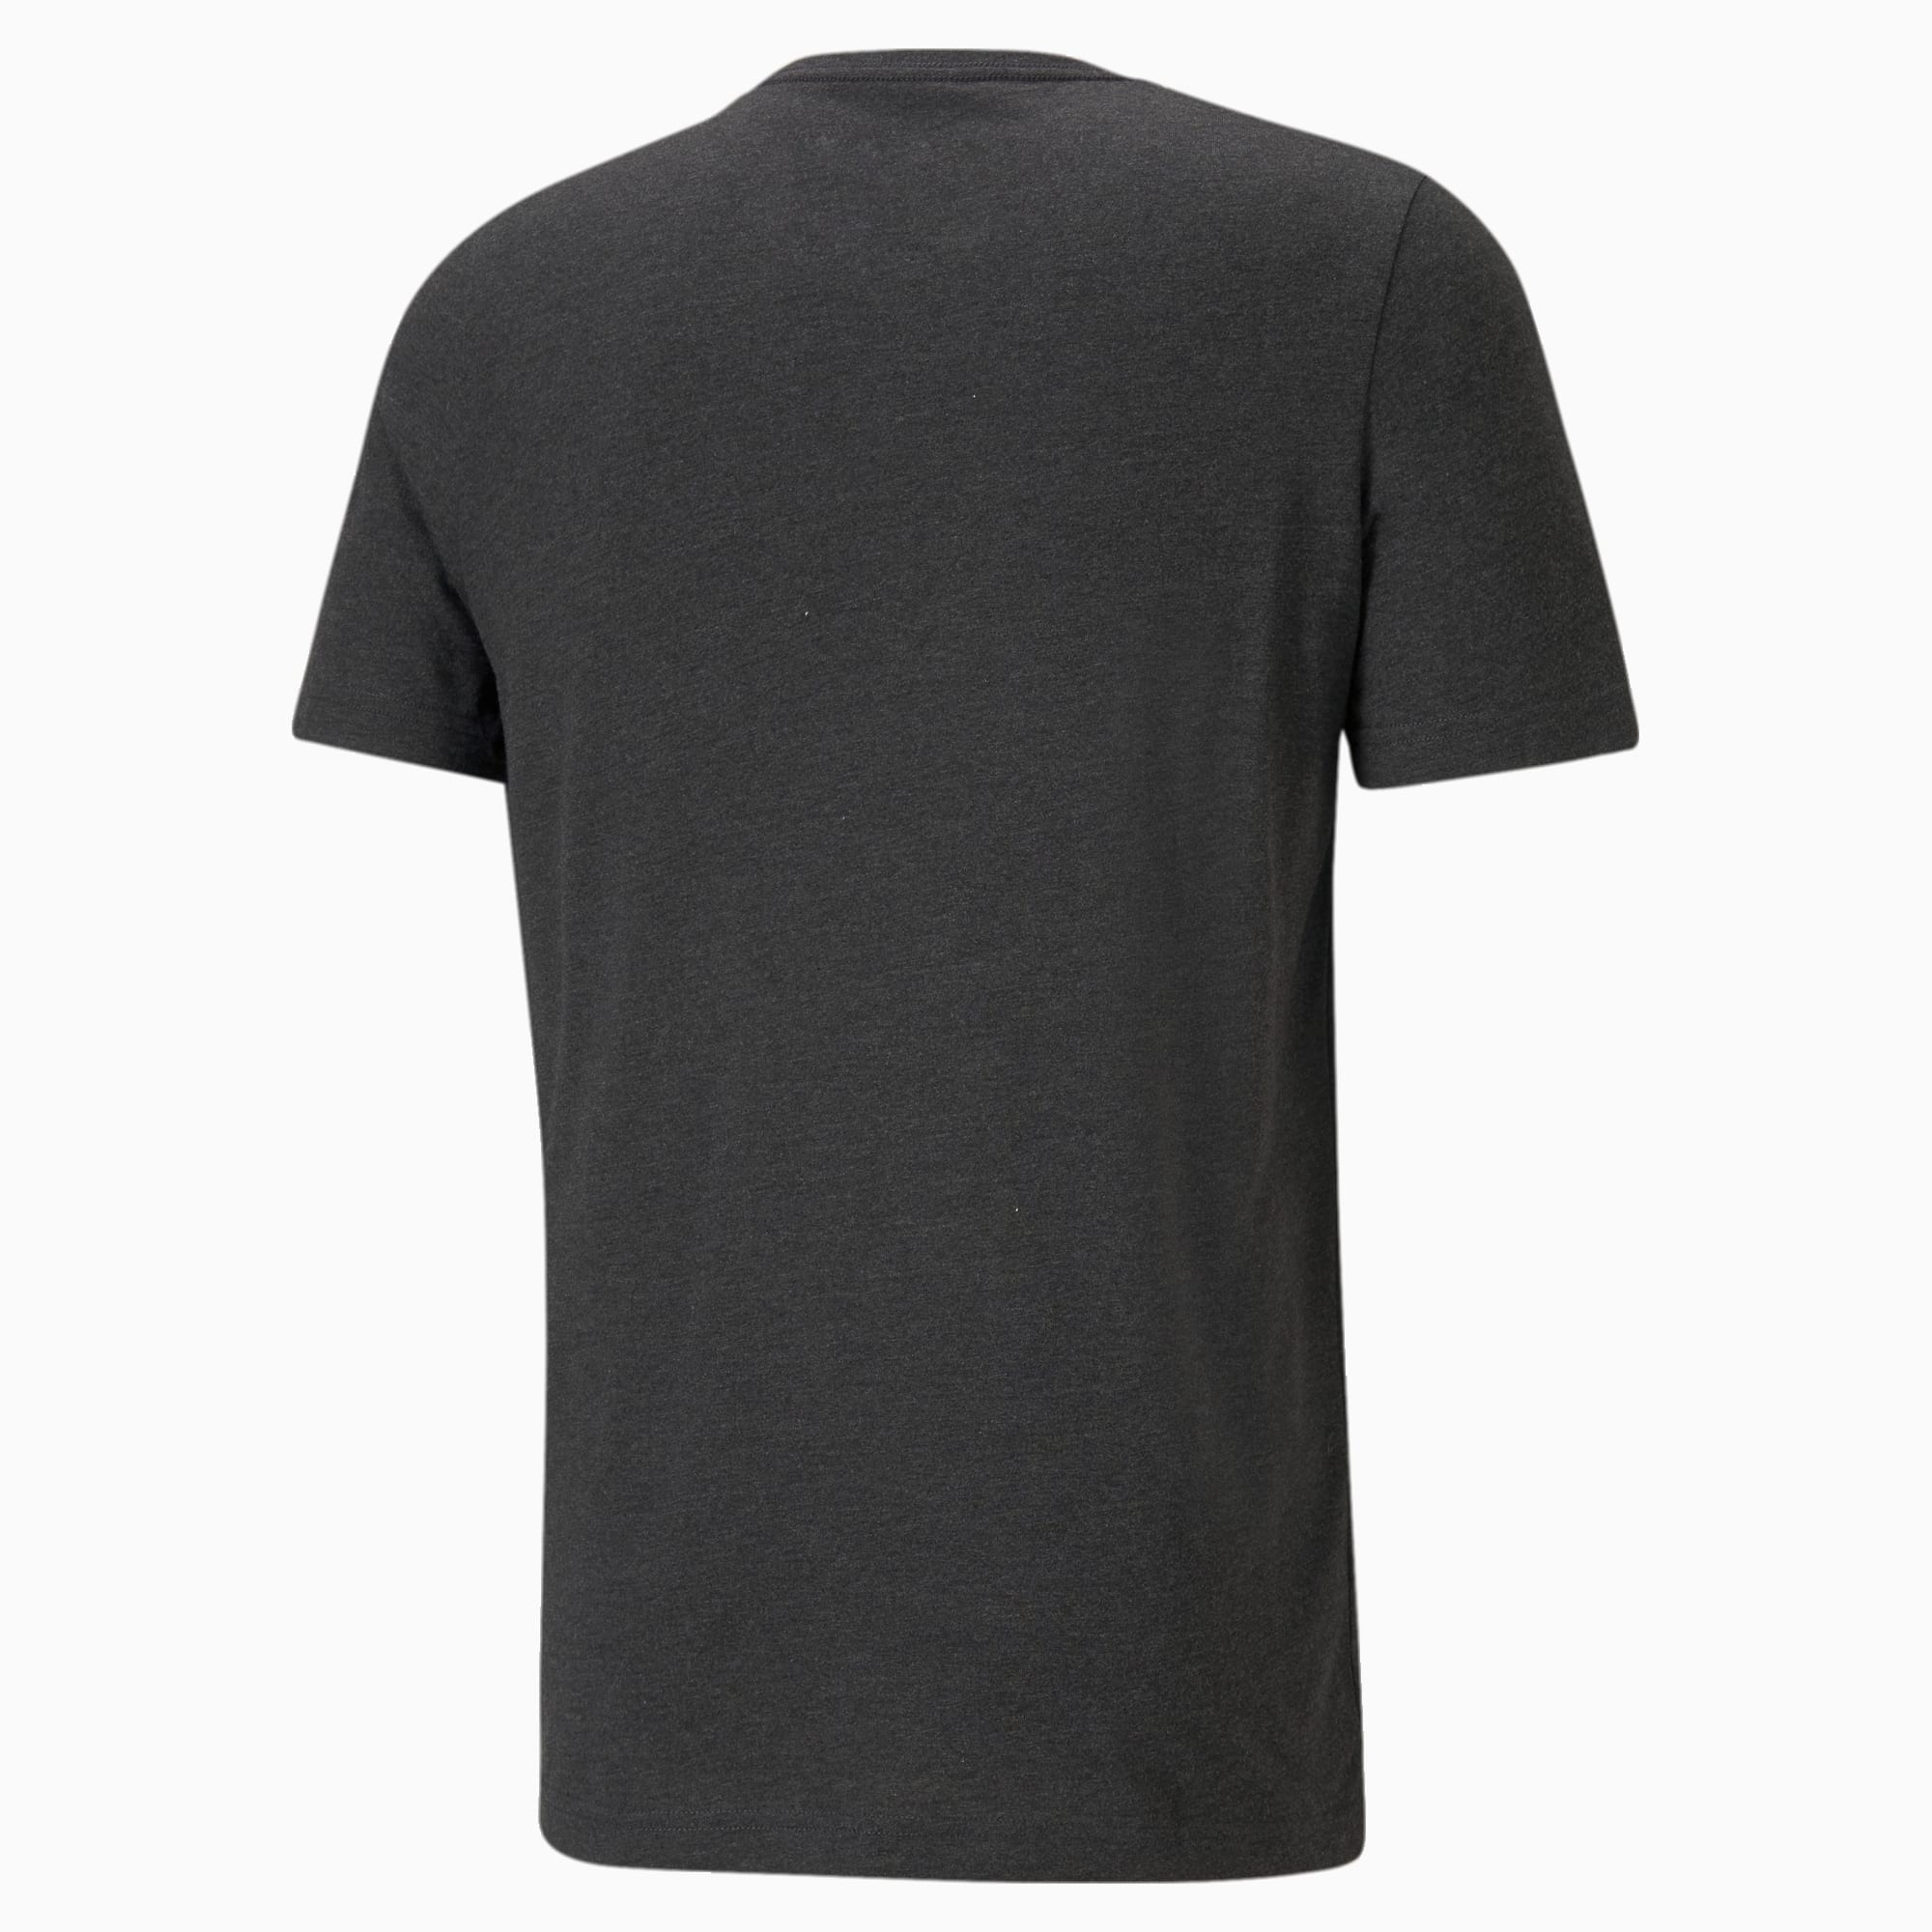 PUMA Essentials Heather Men's T-Shirt, Dark Grey Heather, Size XL, Clothing